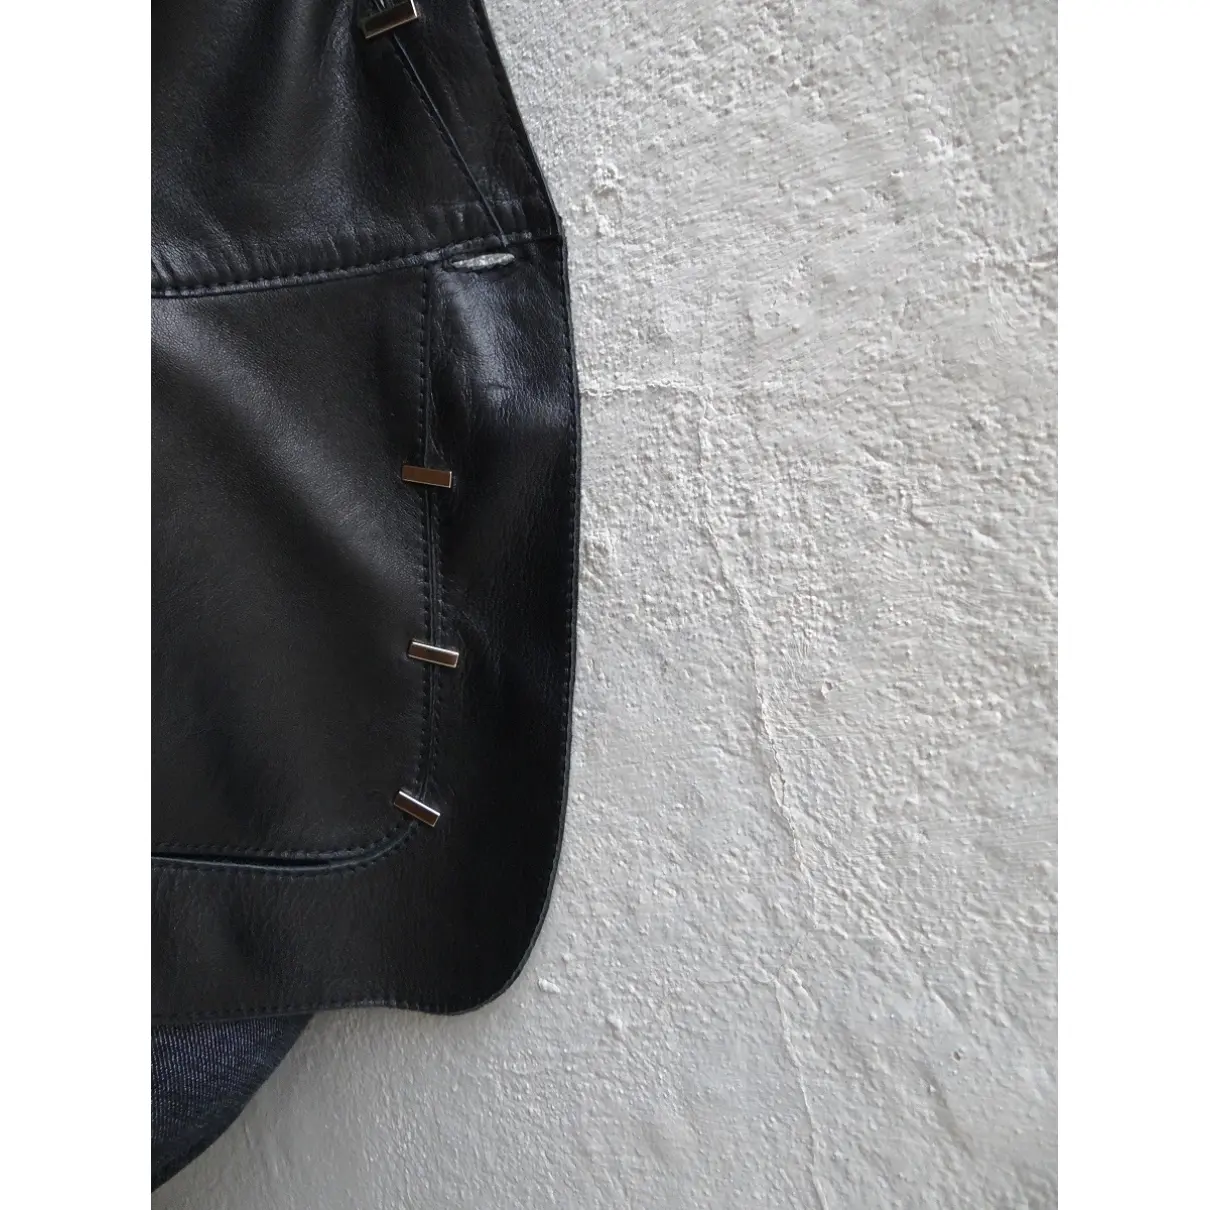 Leather jacket Jitrois